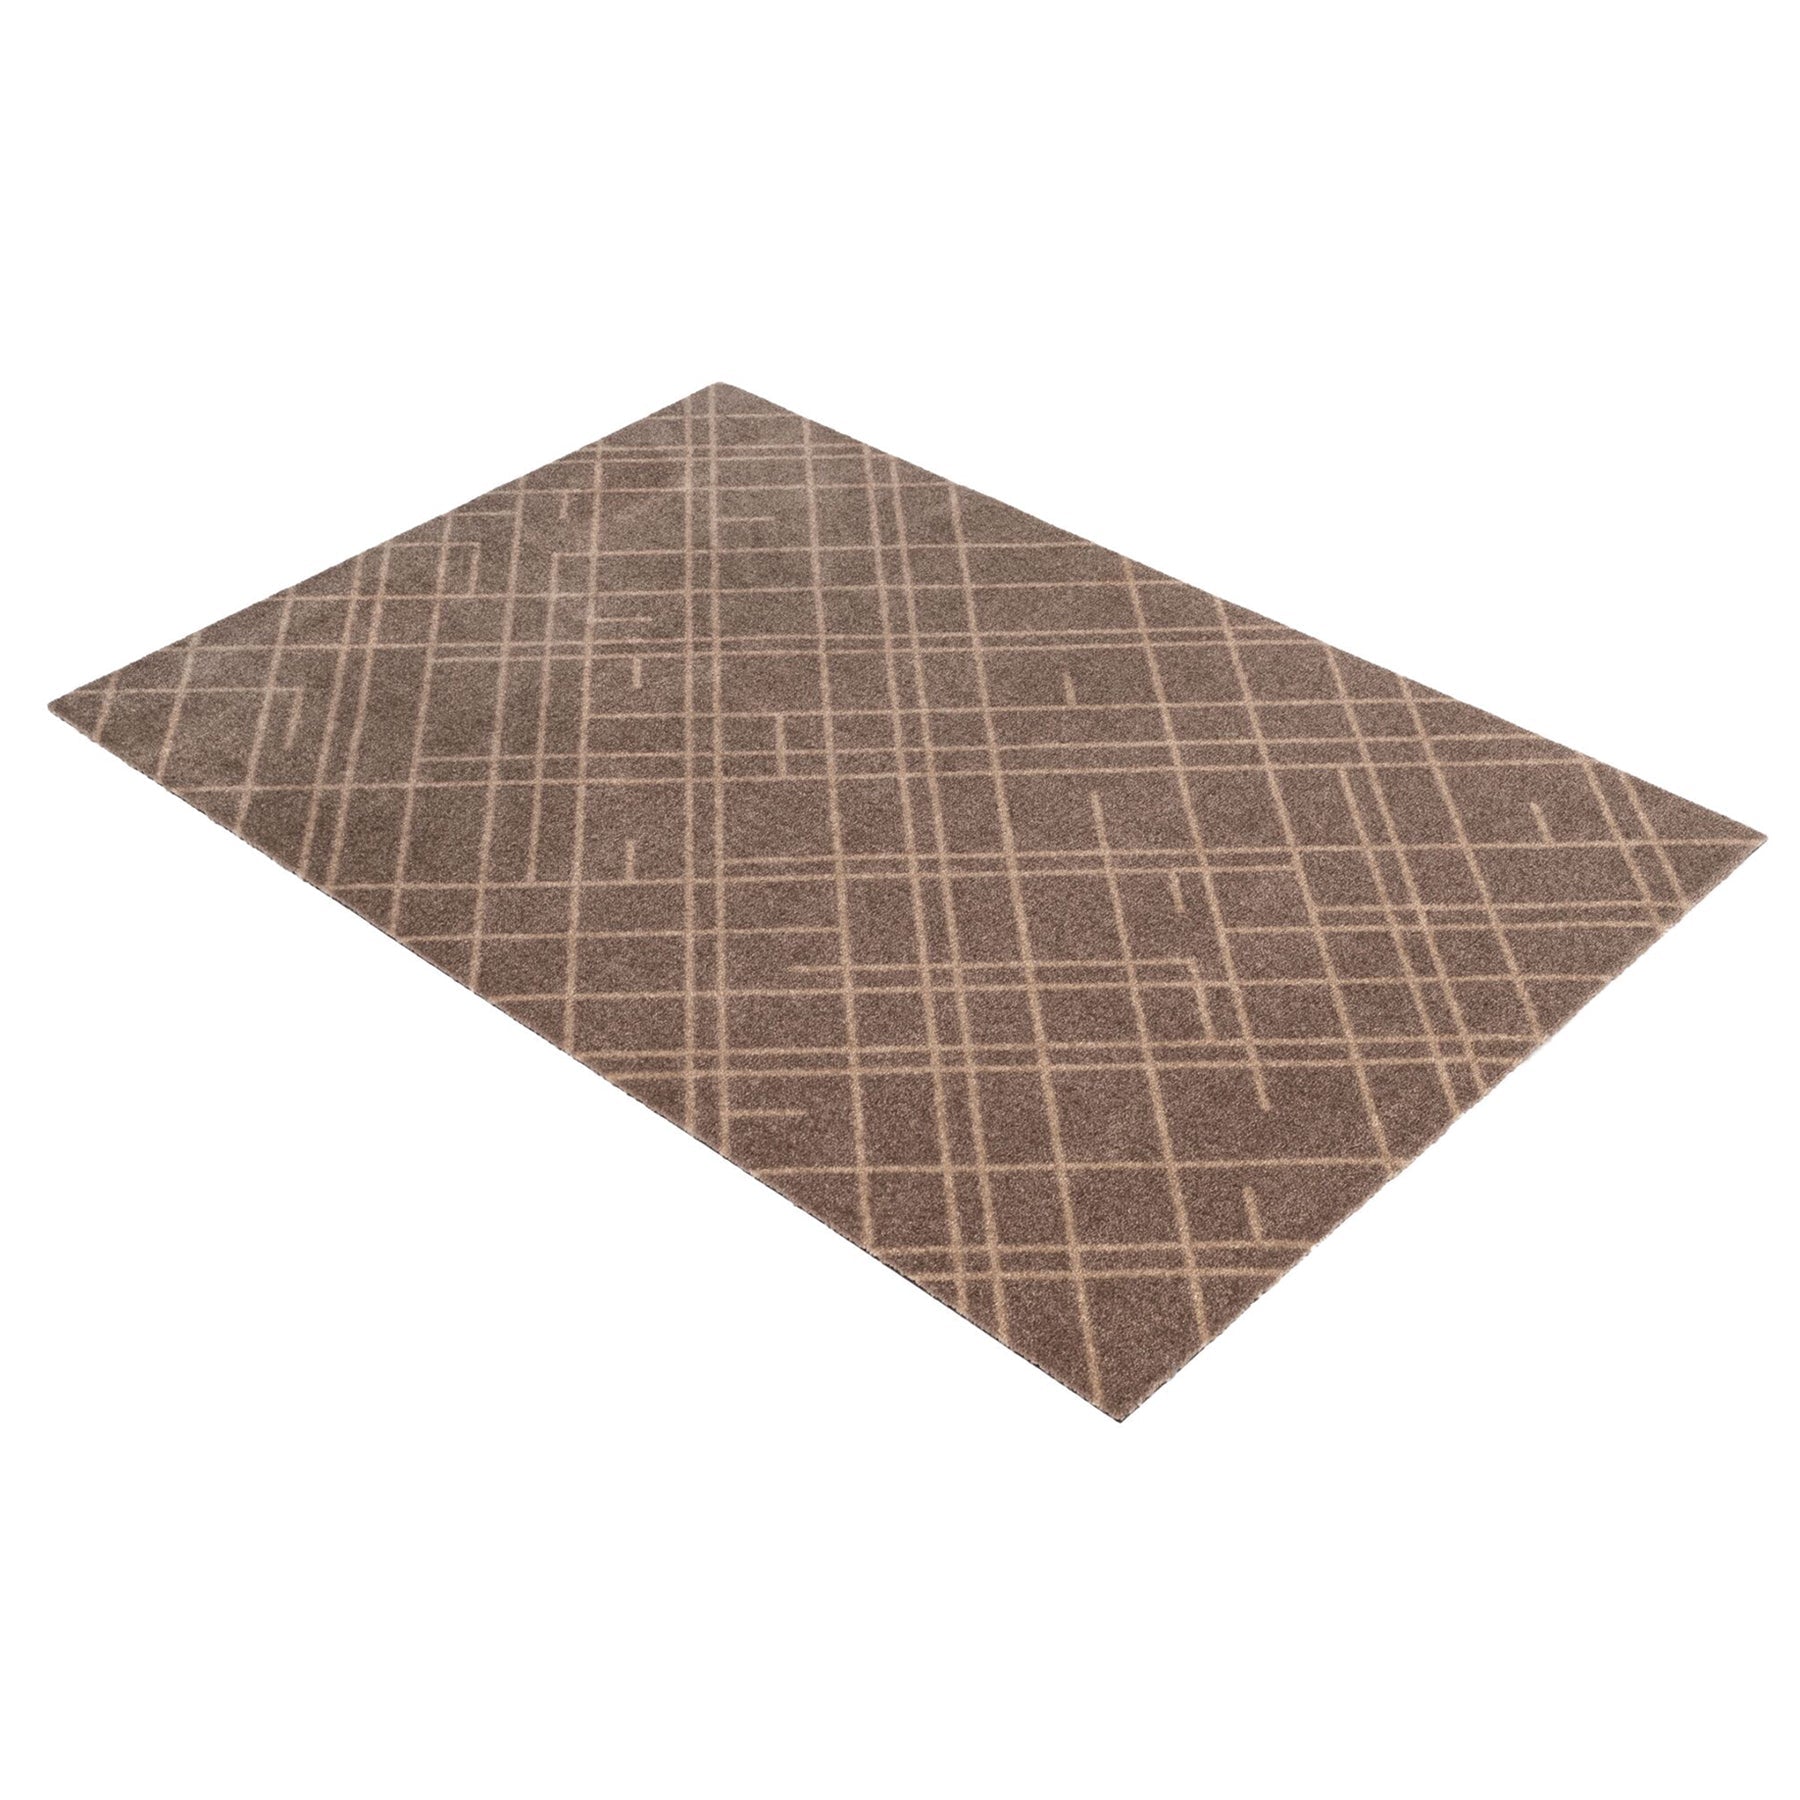 Bodenmatte 90 x 130 cm - Linien/Sand